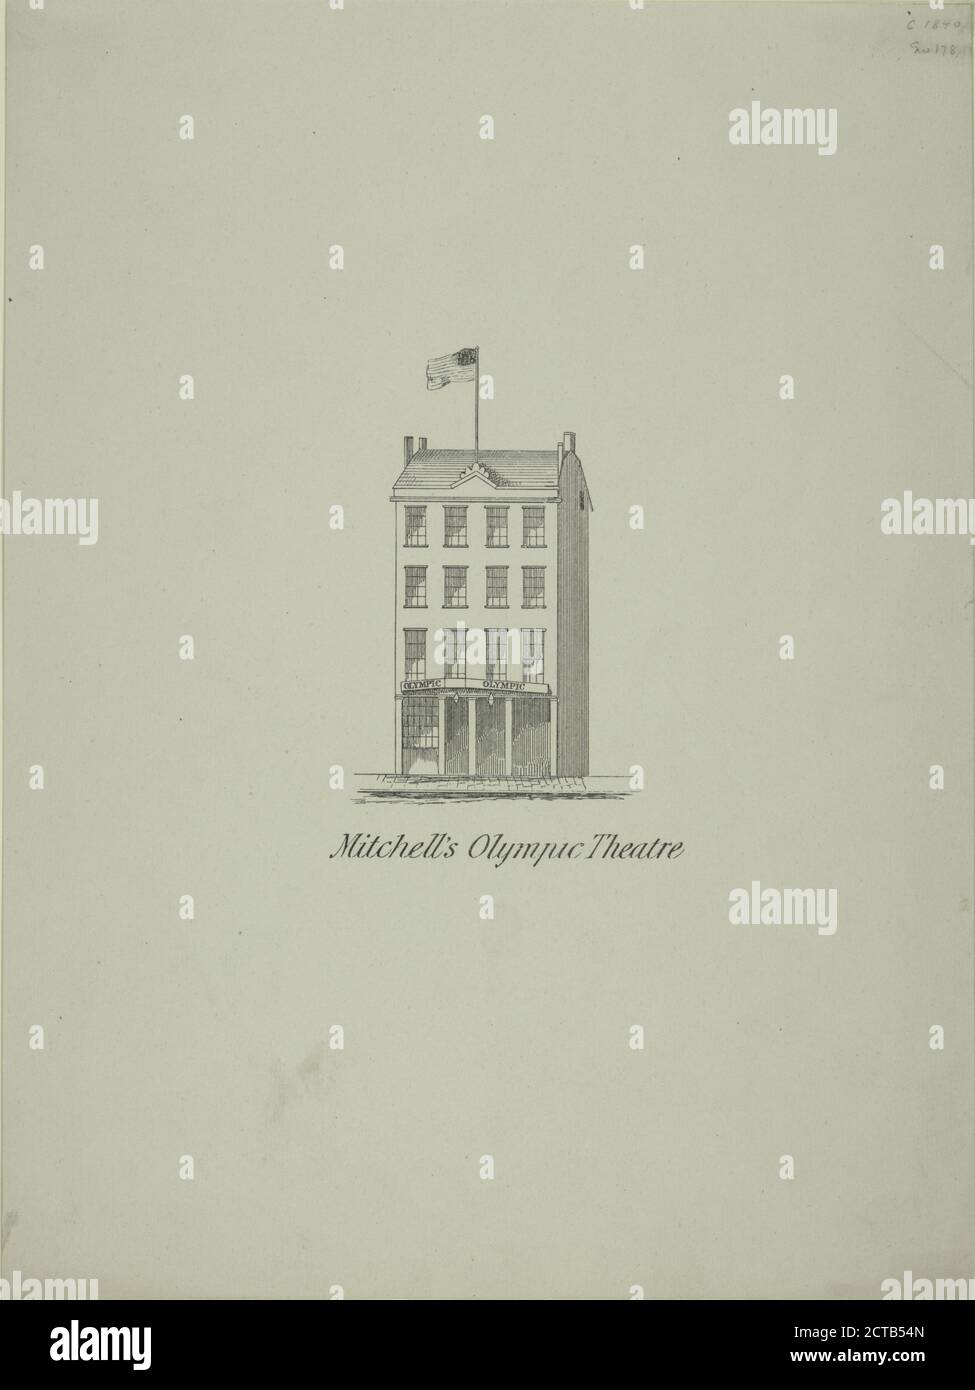 Teatro Olimpico di Mitchell, fermo immagine, stampe, 1840 - 1849 Foto Stock